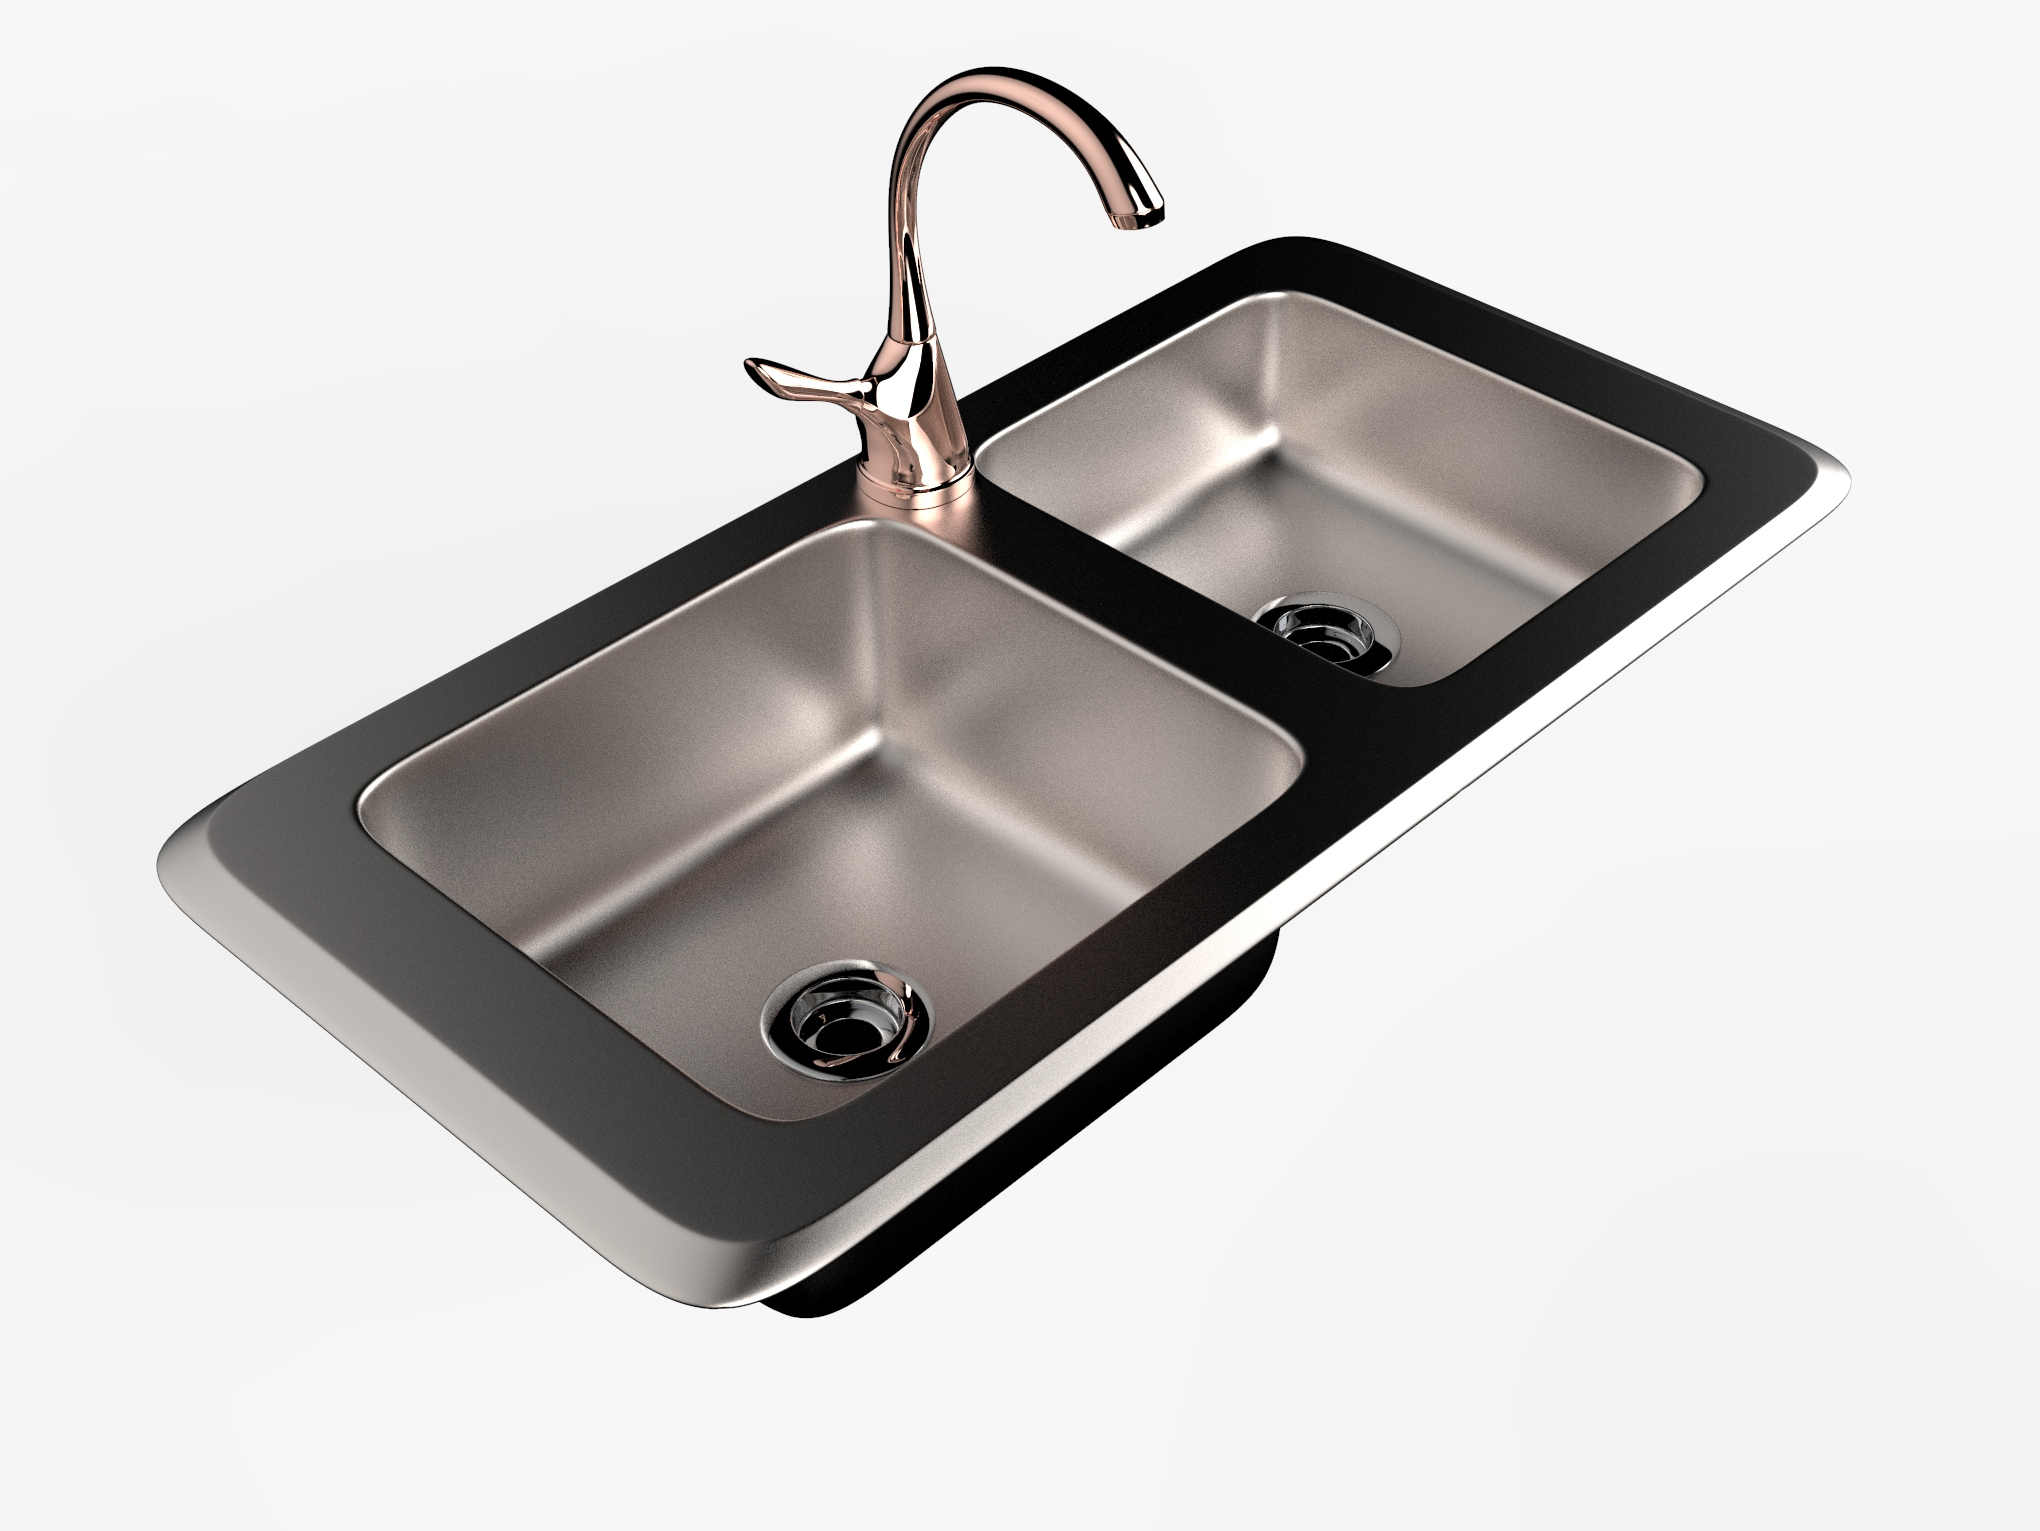 old kitchen sink 3d model free download